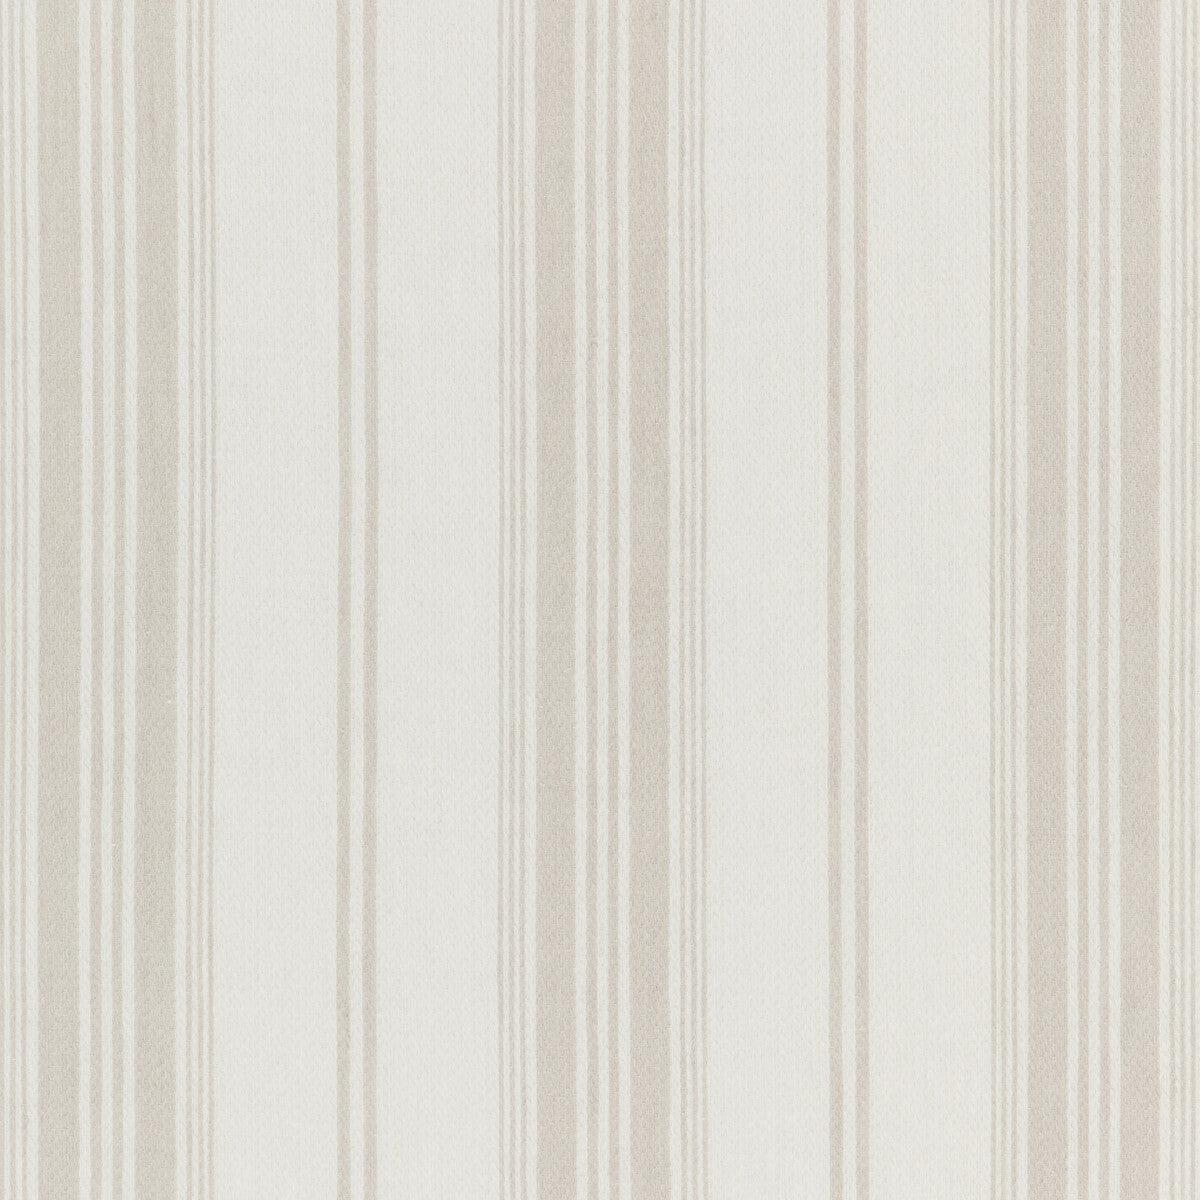 Kravet Design fabric in 4840-11 color - pattern 4840.11.0 - by Kravet Design